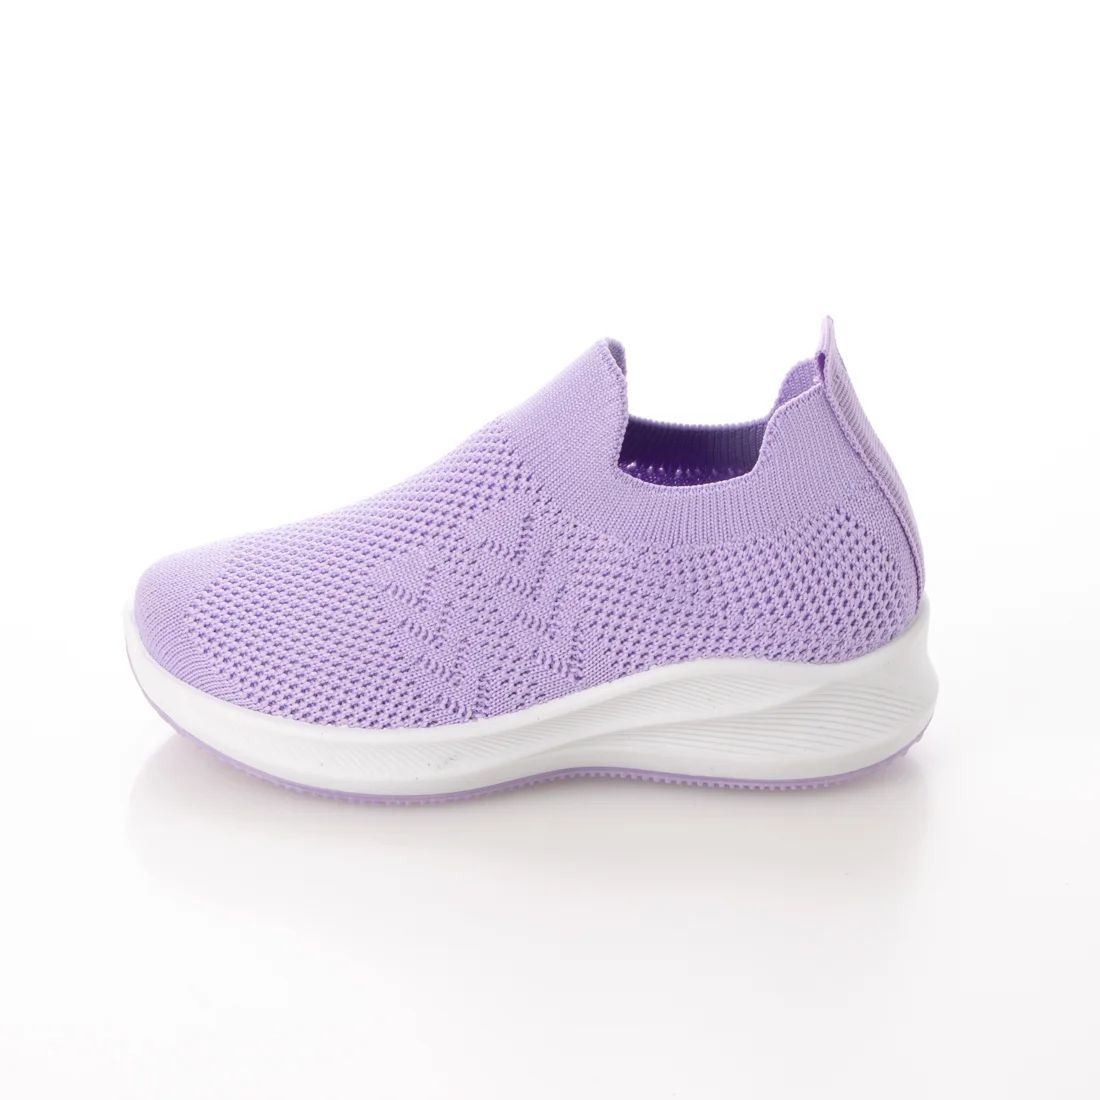 [ новый товар не использовался ]22918 Kids вязаный спортивные туфли лиловый 17.0cm фиолетовый 